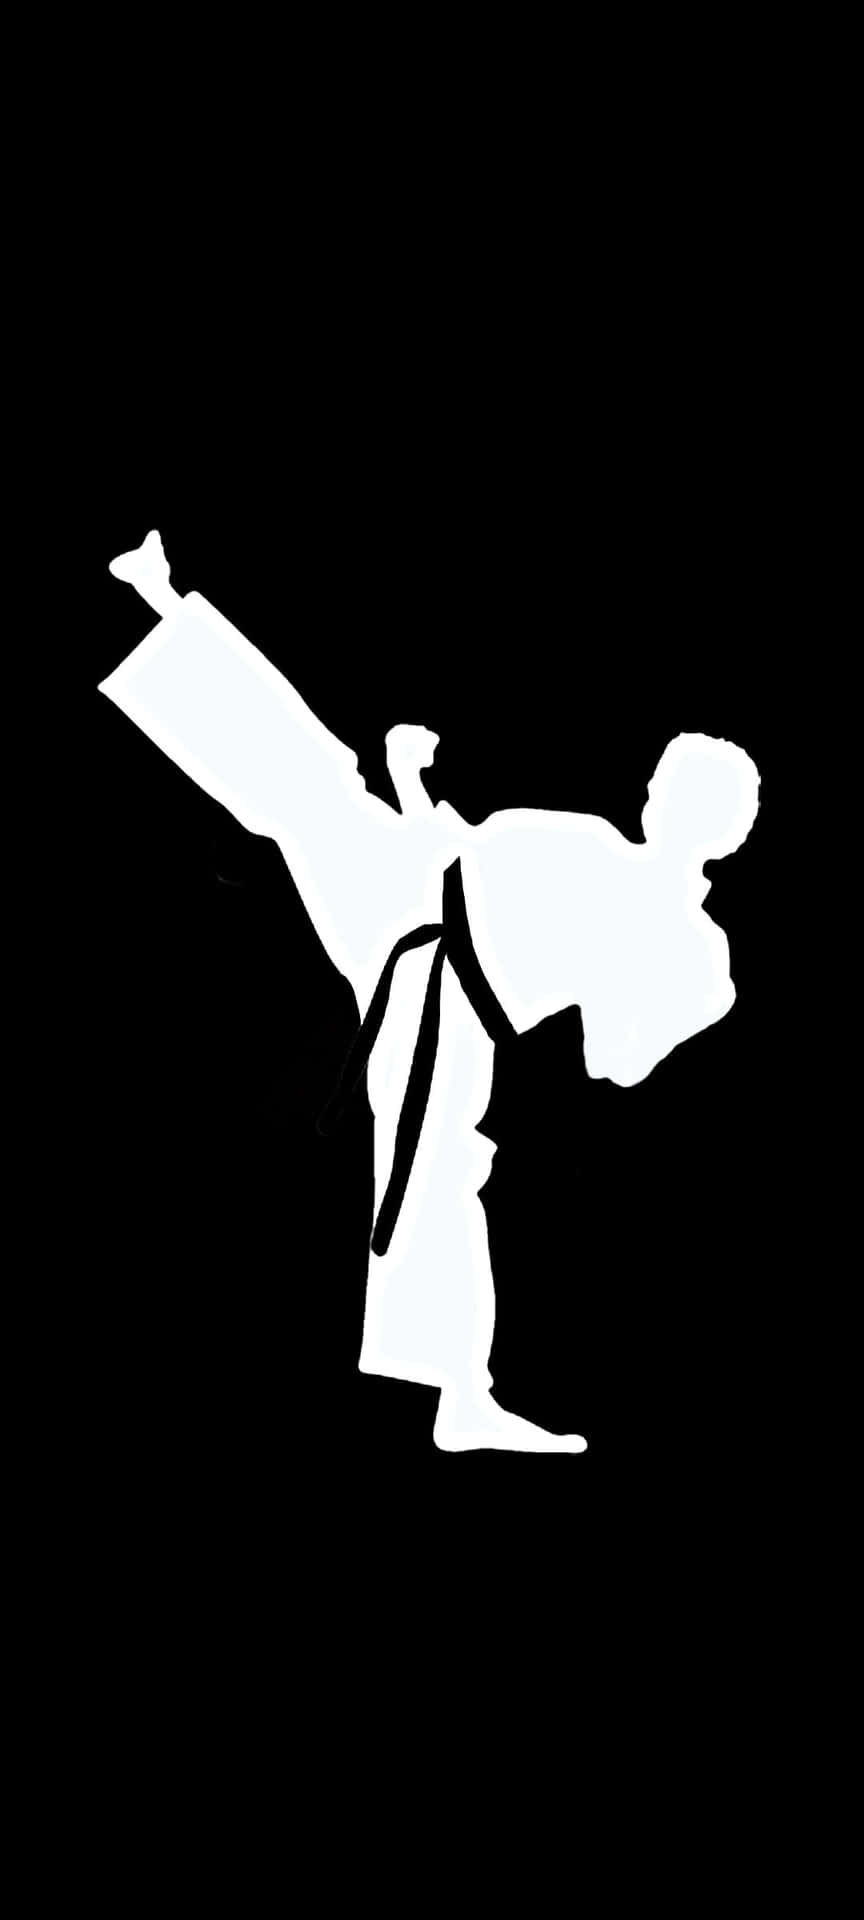 A White Karate Man Doing A Kick